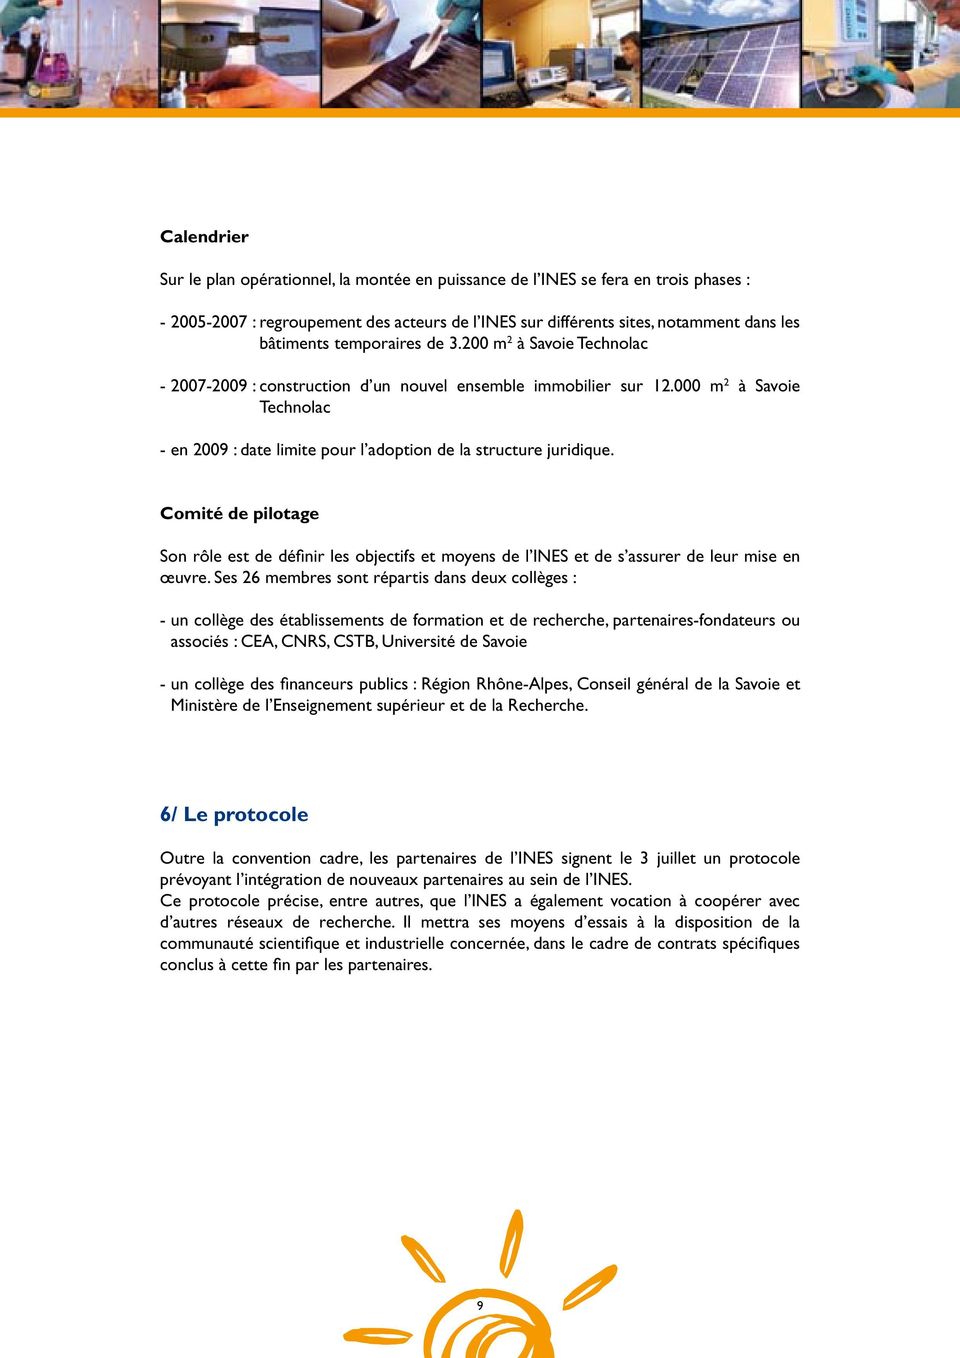 000 m 2 à Savoie Technolac - en 2009 : date limite pour l adoption de la structure juridique.